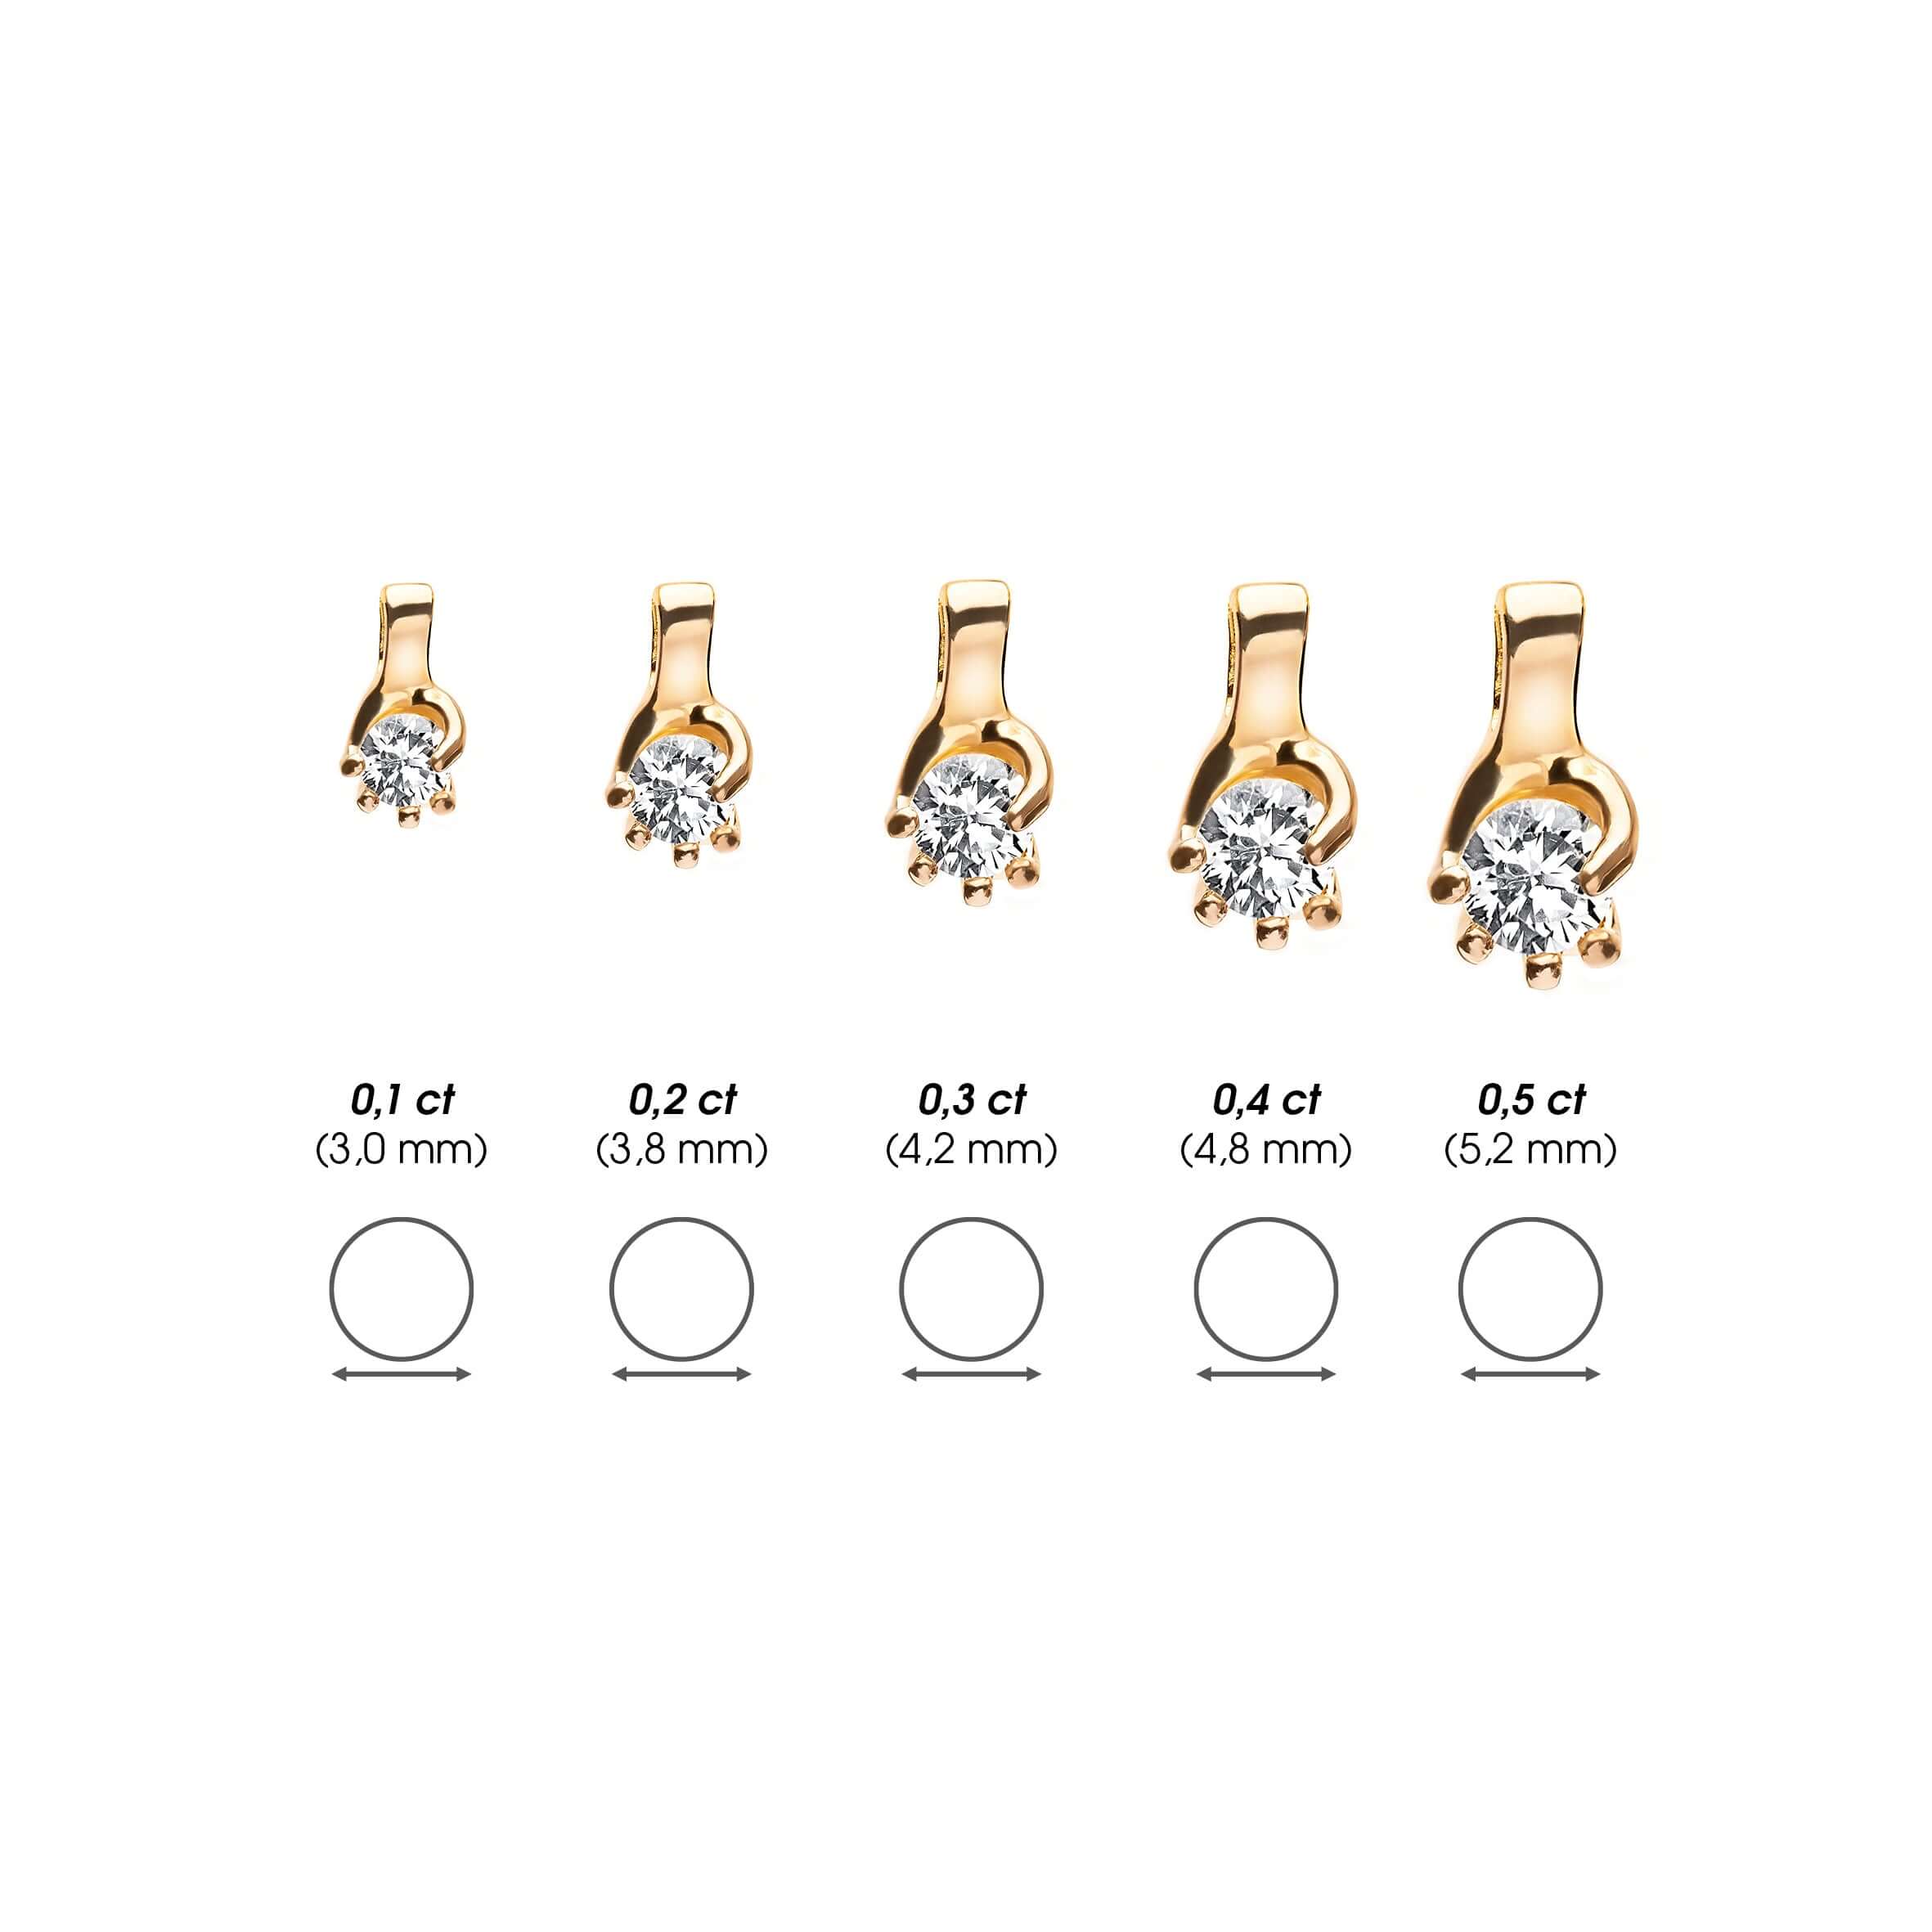 Symbolske diamantsmykker i forskjellige størrelser